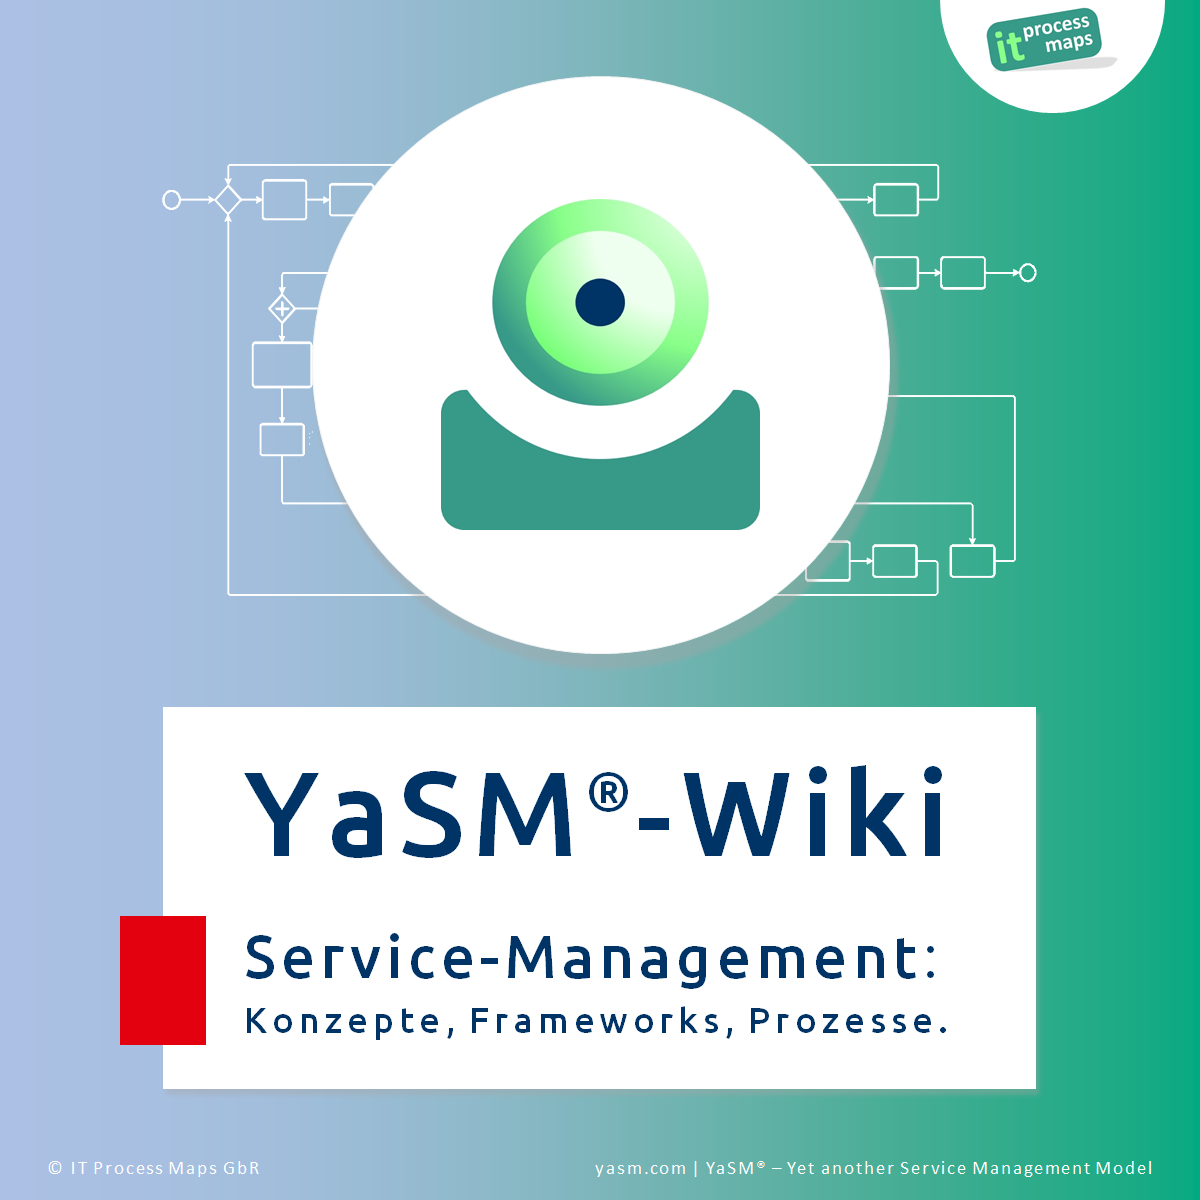 Service-Management-Wiki: Wiki zu YaSM, Service-Management (Enterprise-Service-Management, IT-Service-Management) und ISO 20000 (ISO/IEC 20000). Referenz-Material zum YaSM Service-Management-Prozessmodell.